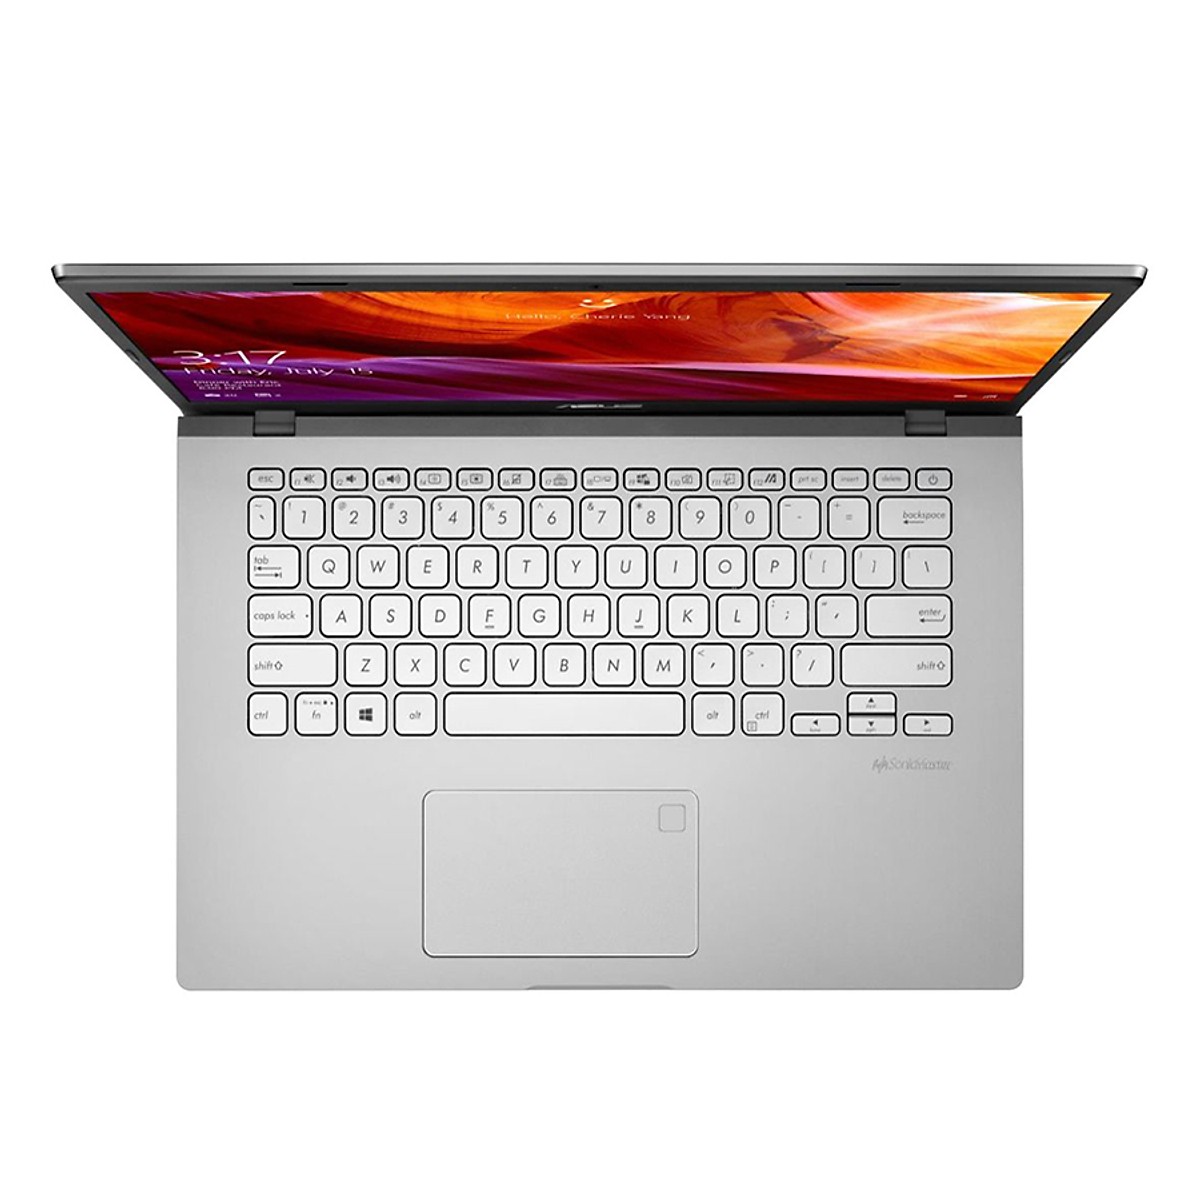 Laptop Asus Vivobook X509FJ-EJ155T (i5-8265U/4GB/512GB SSD/15.6"FHD/MX230 2GB5/Win10/Silver)